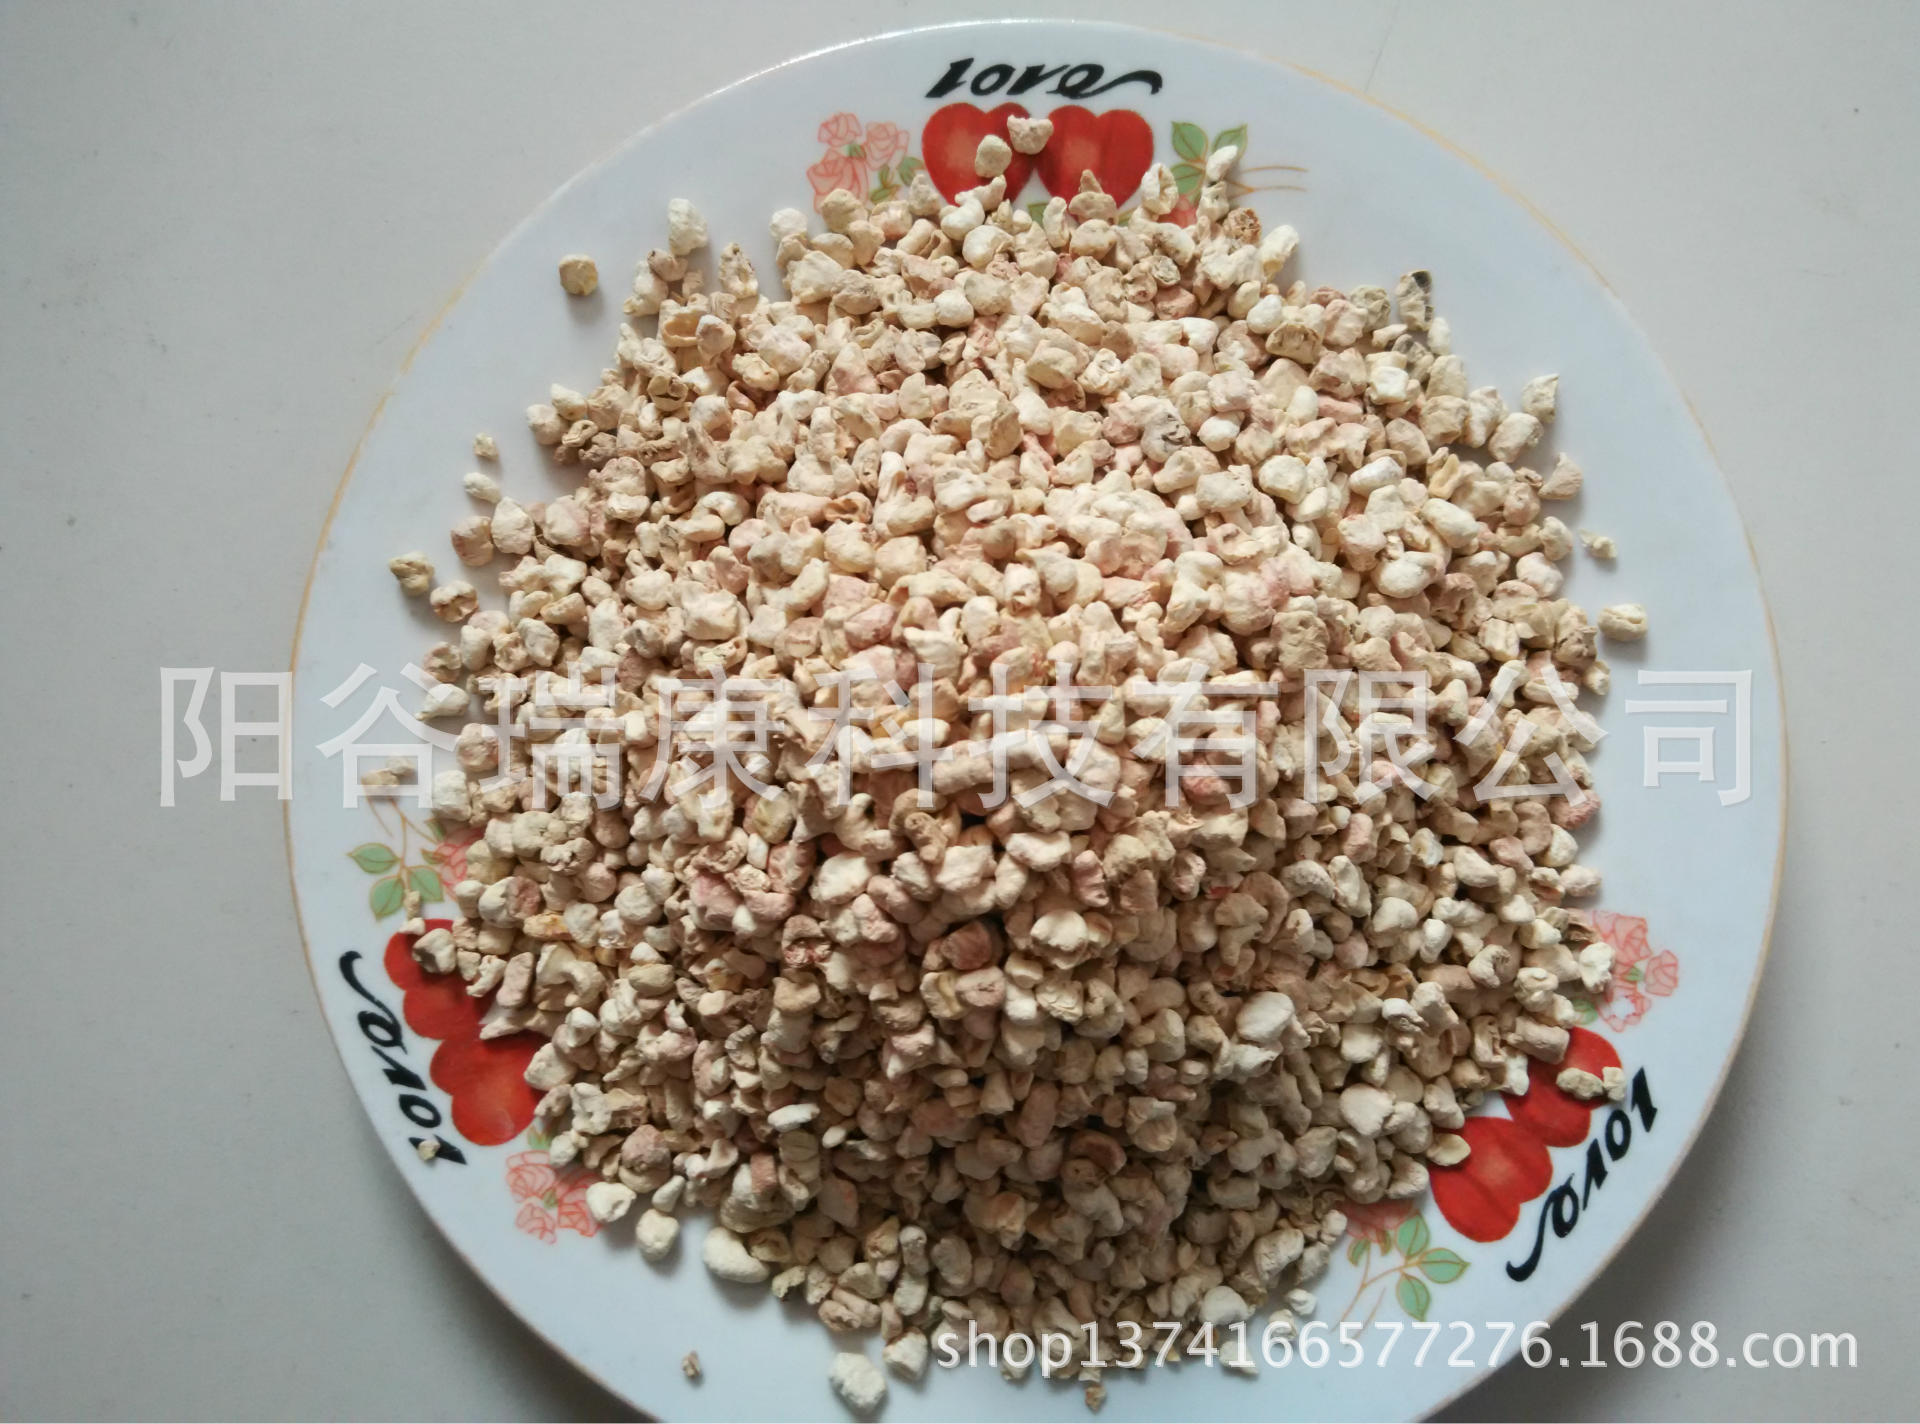 阳谷瑞康科技有限公司销售各种宠物垫料玉米芯颗粒